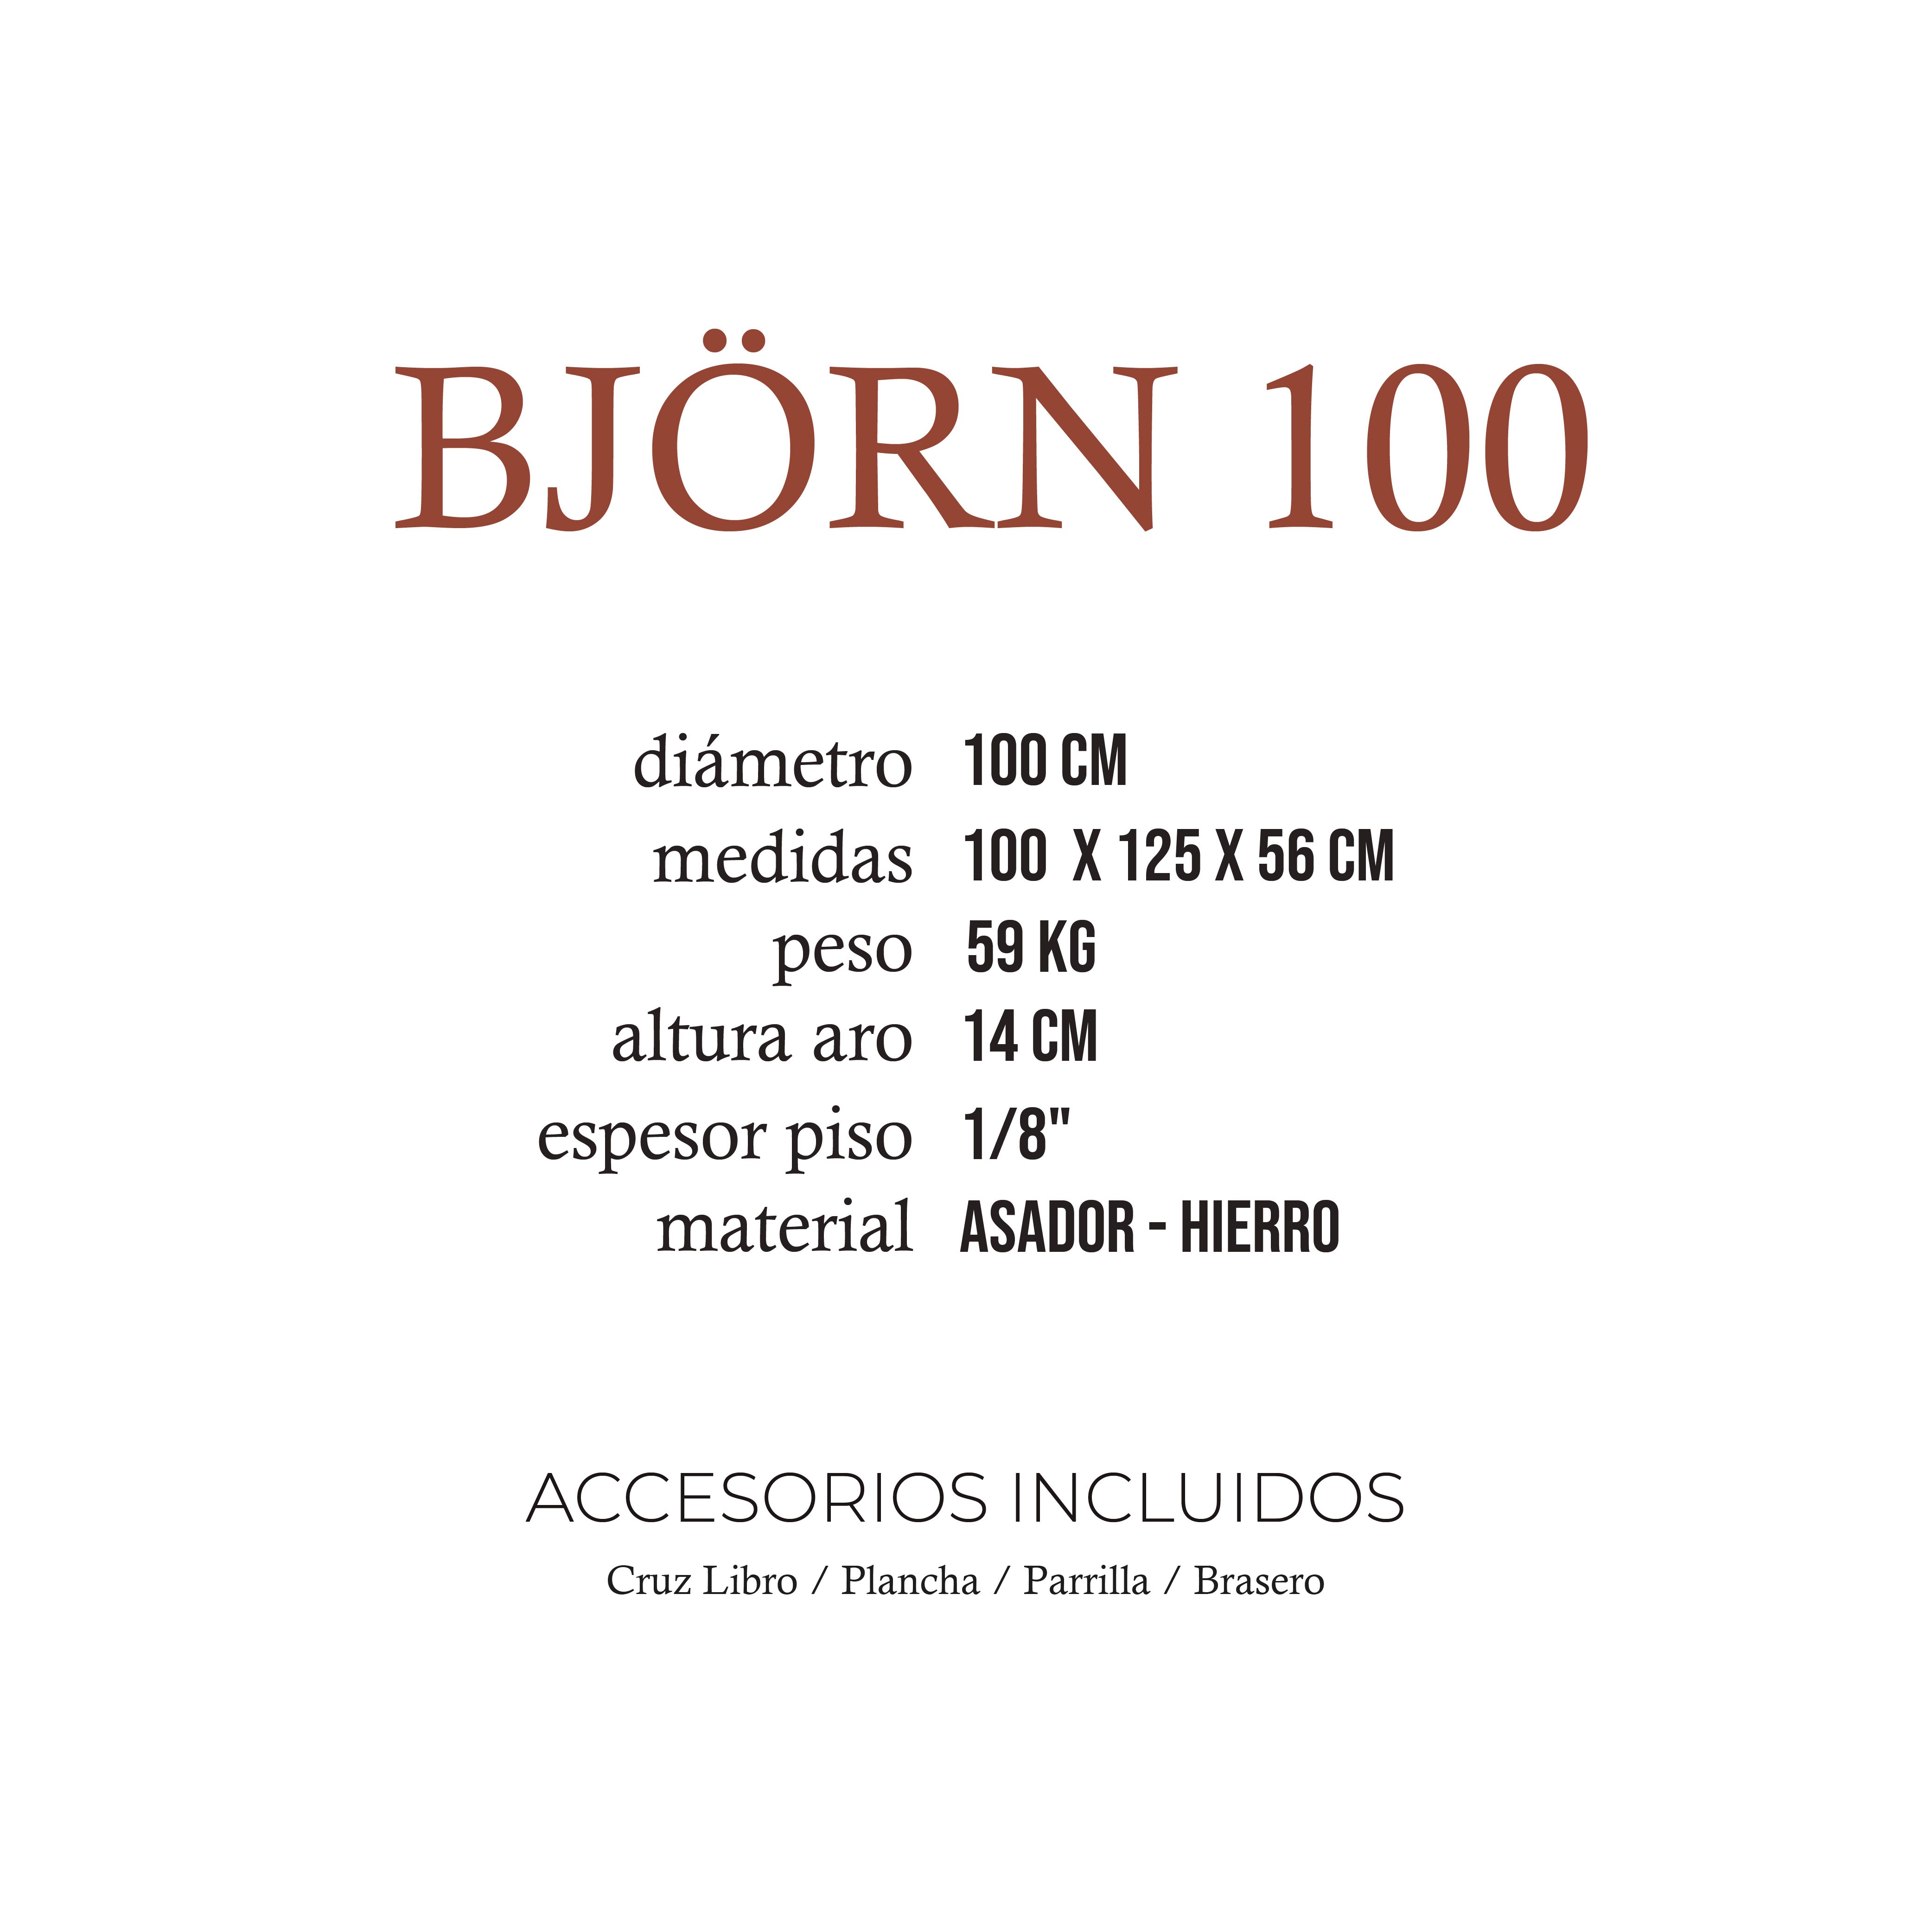 Björn 100